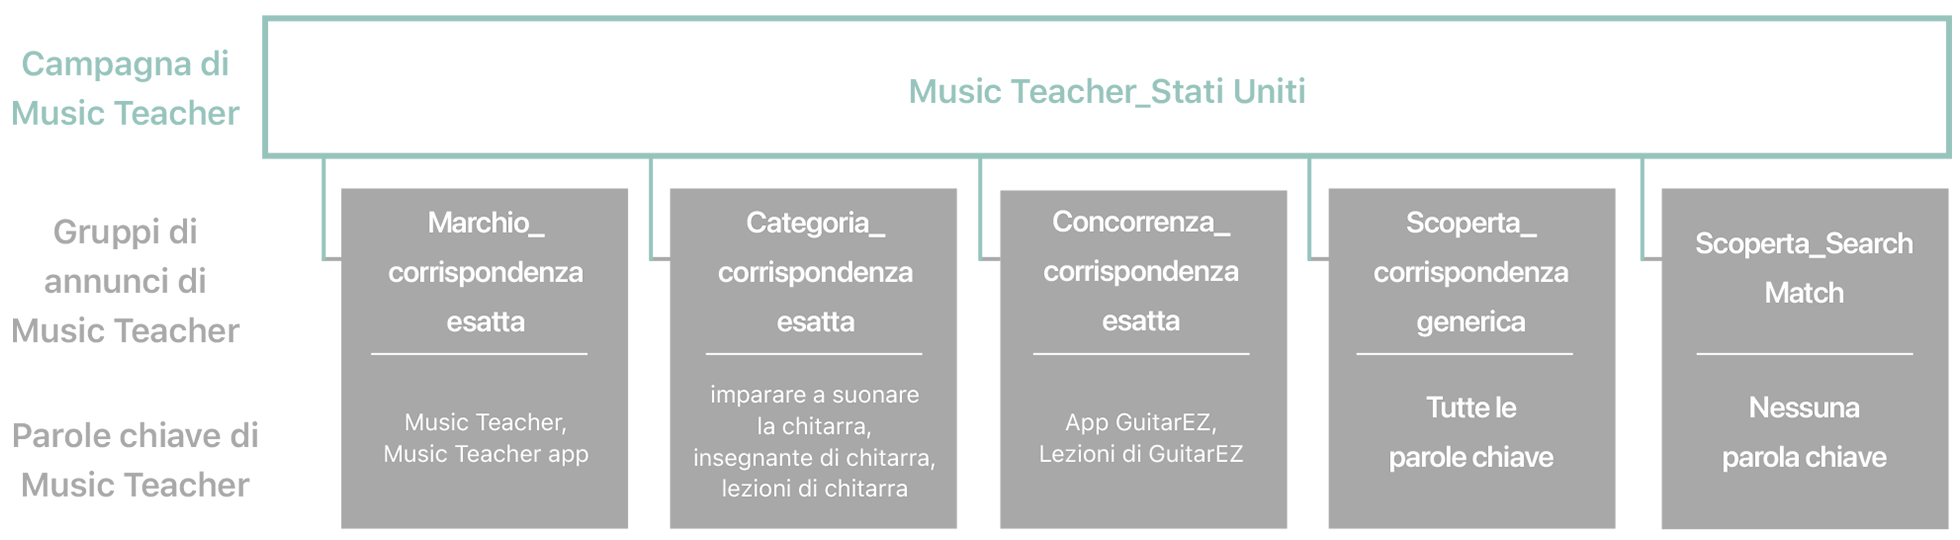 Diagramma dei tipi di campagne e dei gruppi di annunci associati, con le parole chiave suggerite e suggerimenti per l’app di esempio Music Teacher. 